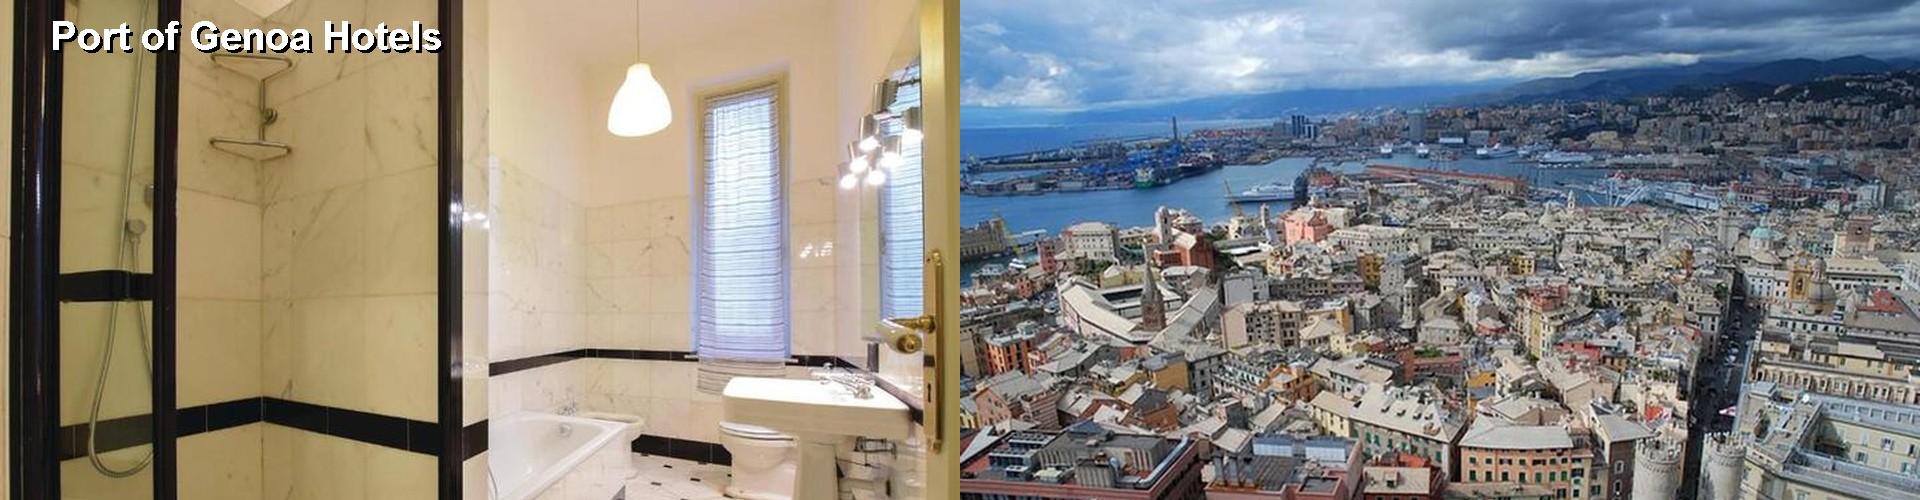 5 Best Hotels near Port of Genoa